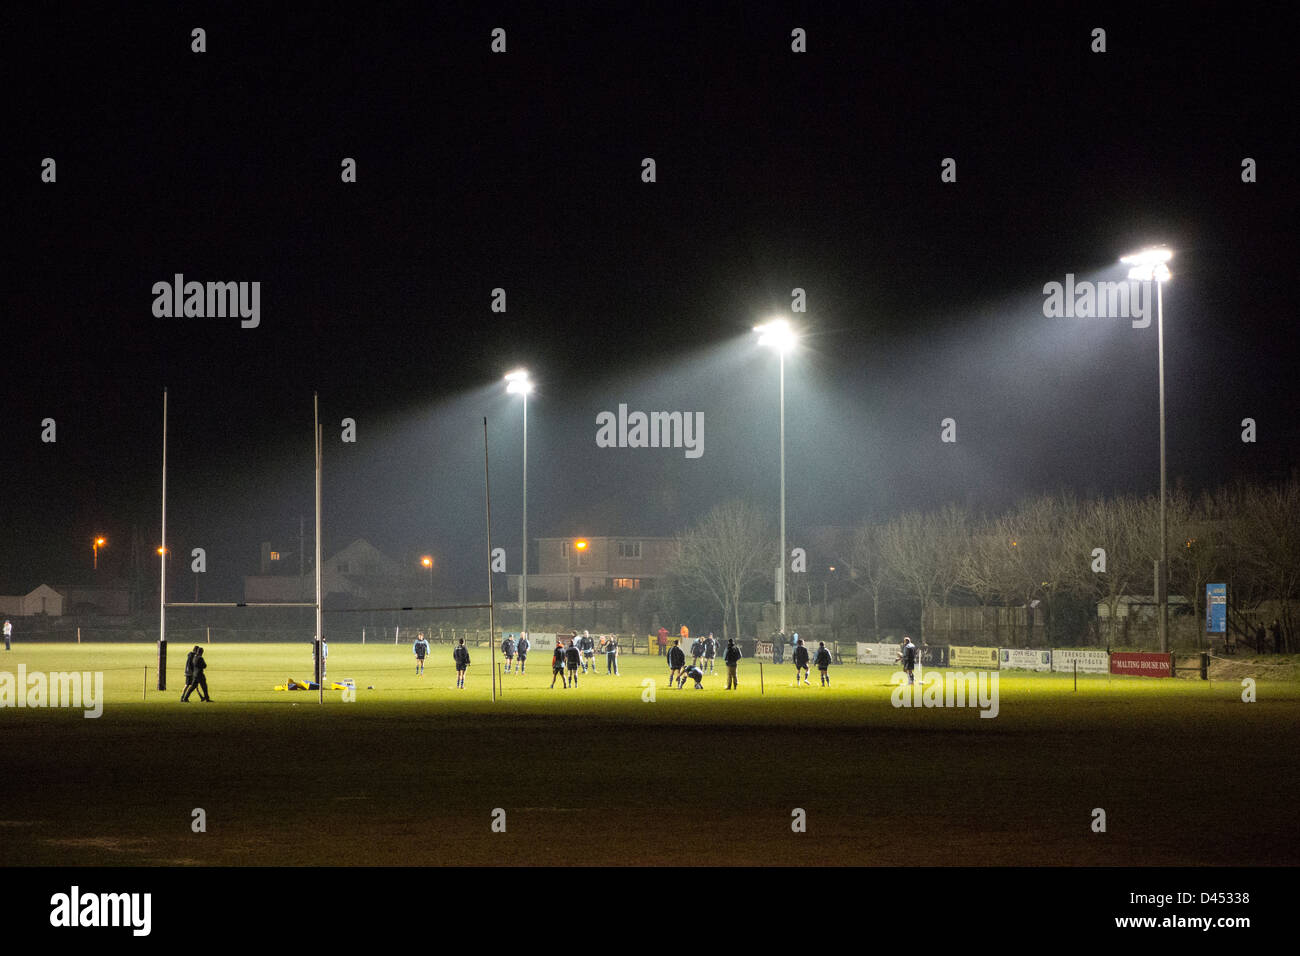 Rugby-Spieler trainieren auf dem Spielfeld in der Nacht beleuchtet durch Flutlicht - in der Nähe von Dublin, Irland Stockfoto